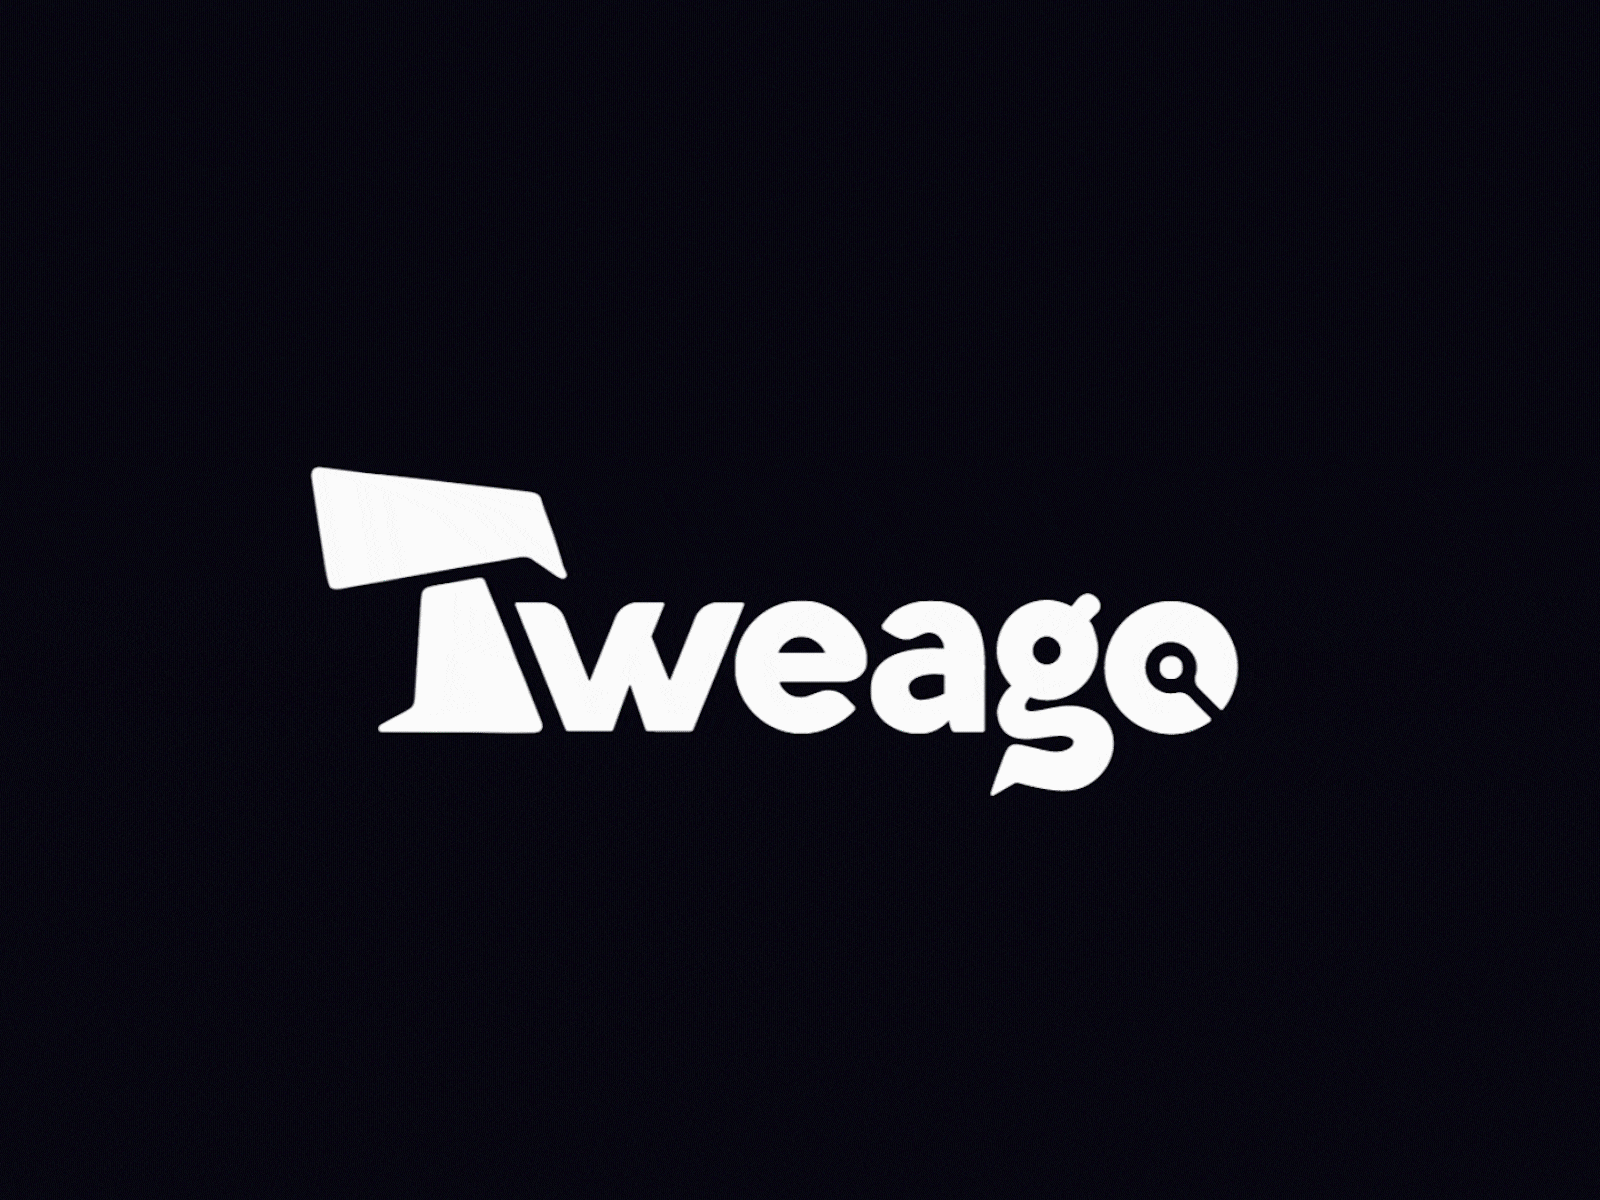 Tweago - Logo animation animated logo branding logo animation logo design logomark logotype